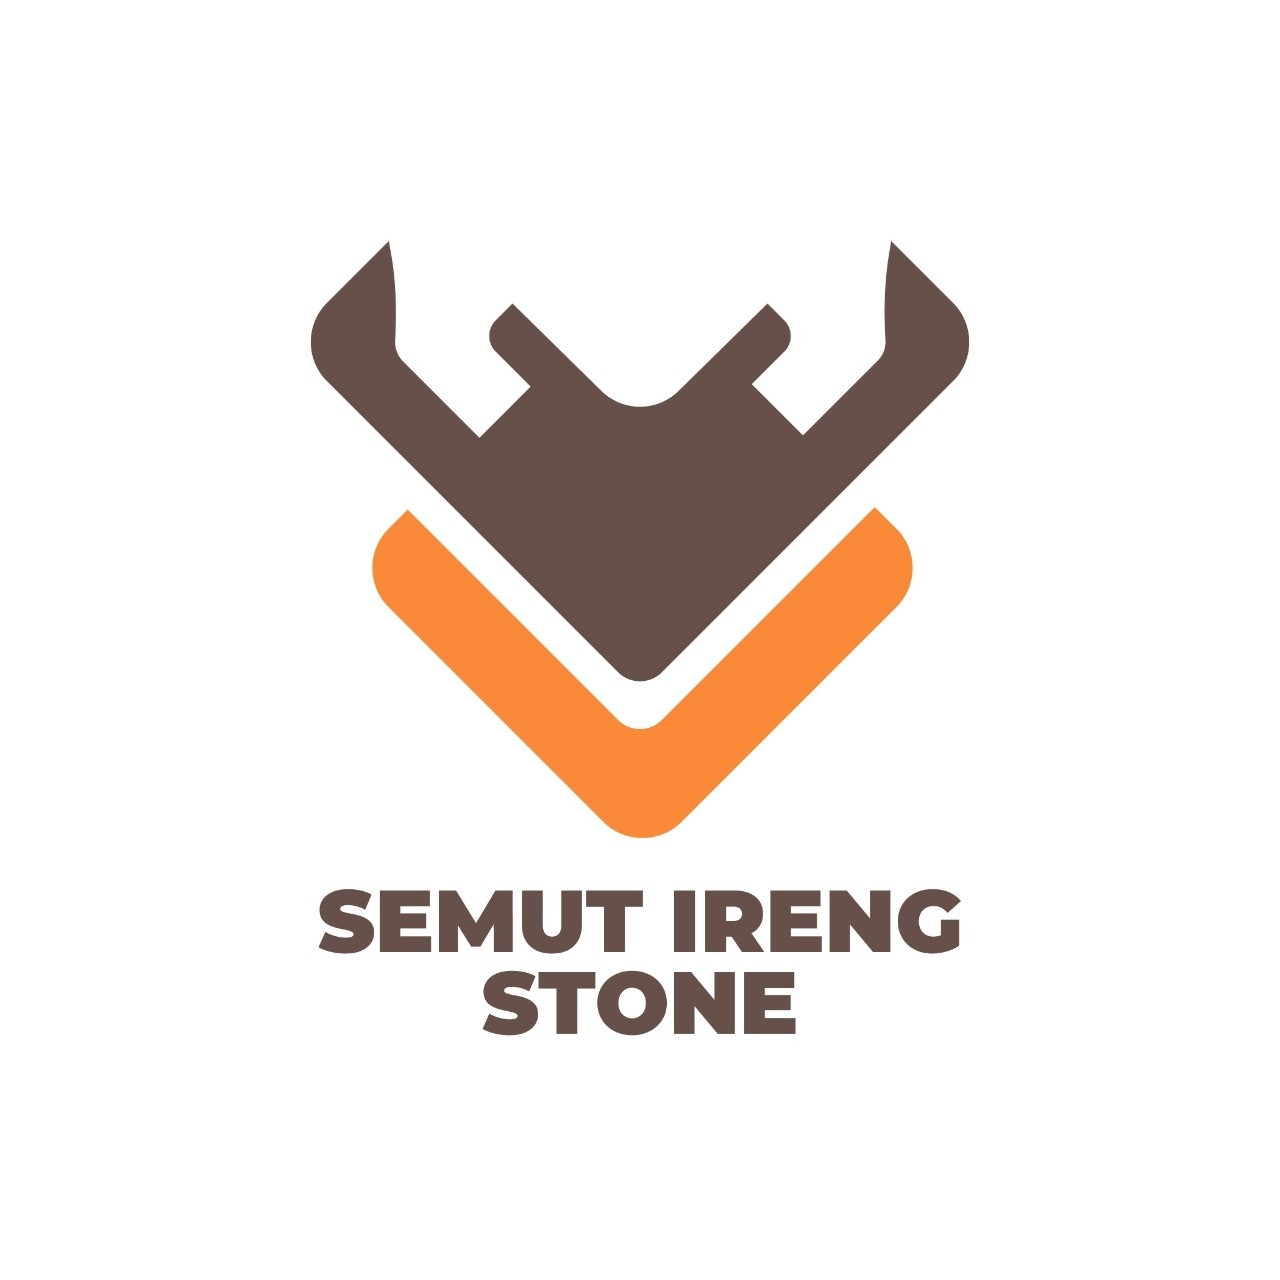 Semut Ireng Stone: Pabrik & Produsen Batu Alam Andesit TermurahSemut Ireng Stone: Pabrik & Produsen Batu Alam Andesit Termurah | Semut Ireng Stone